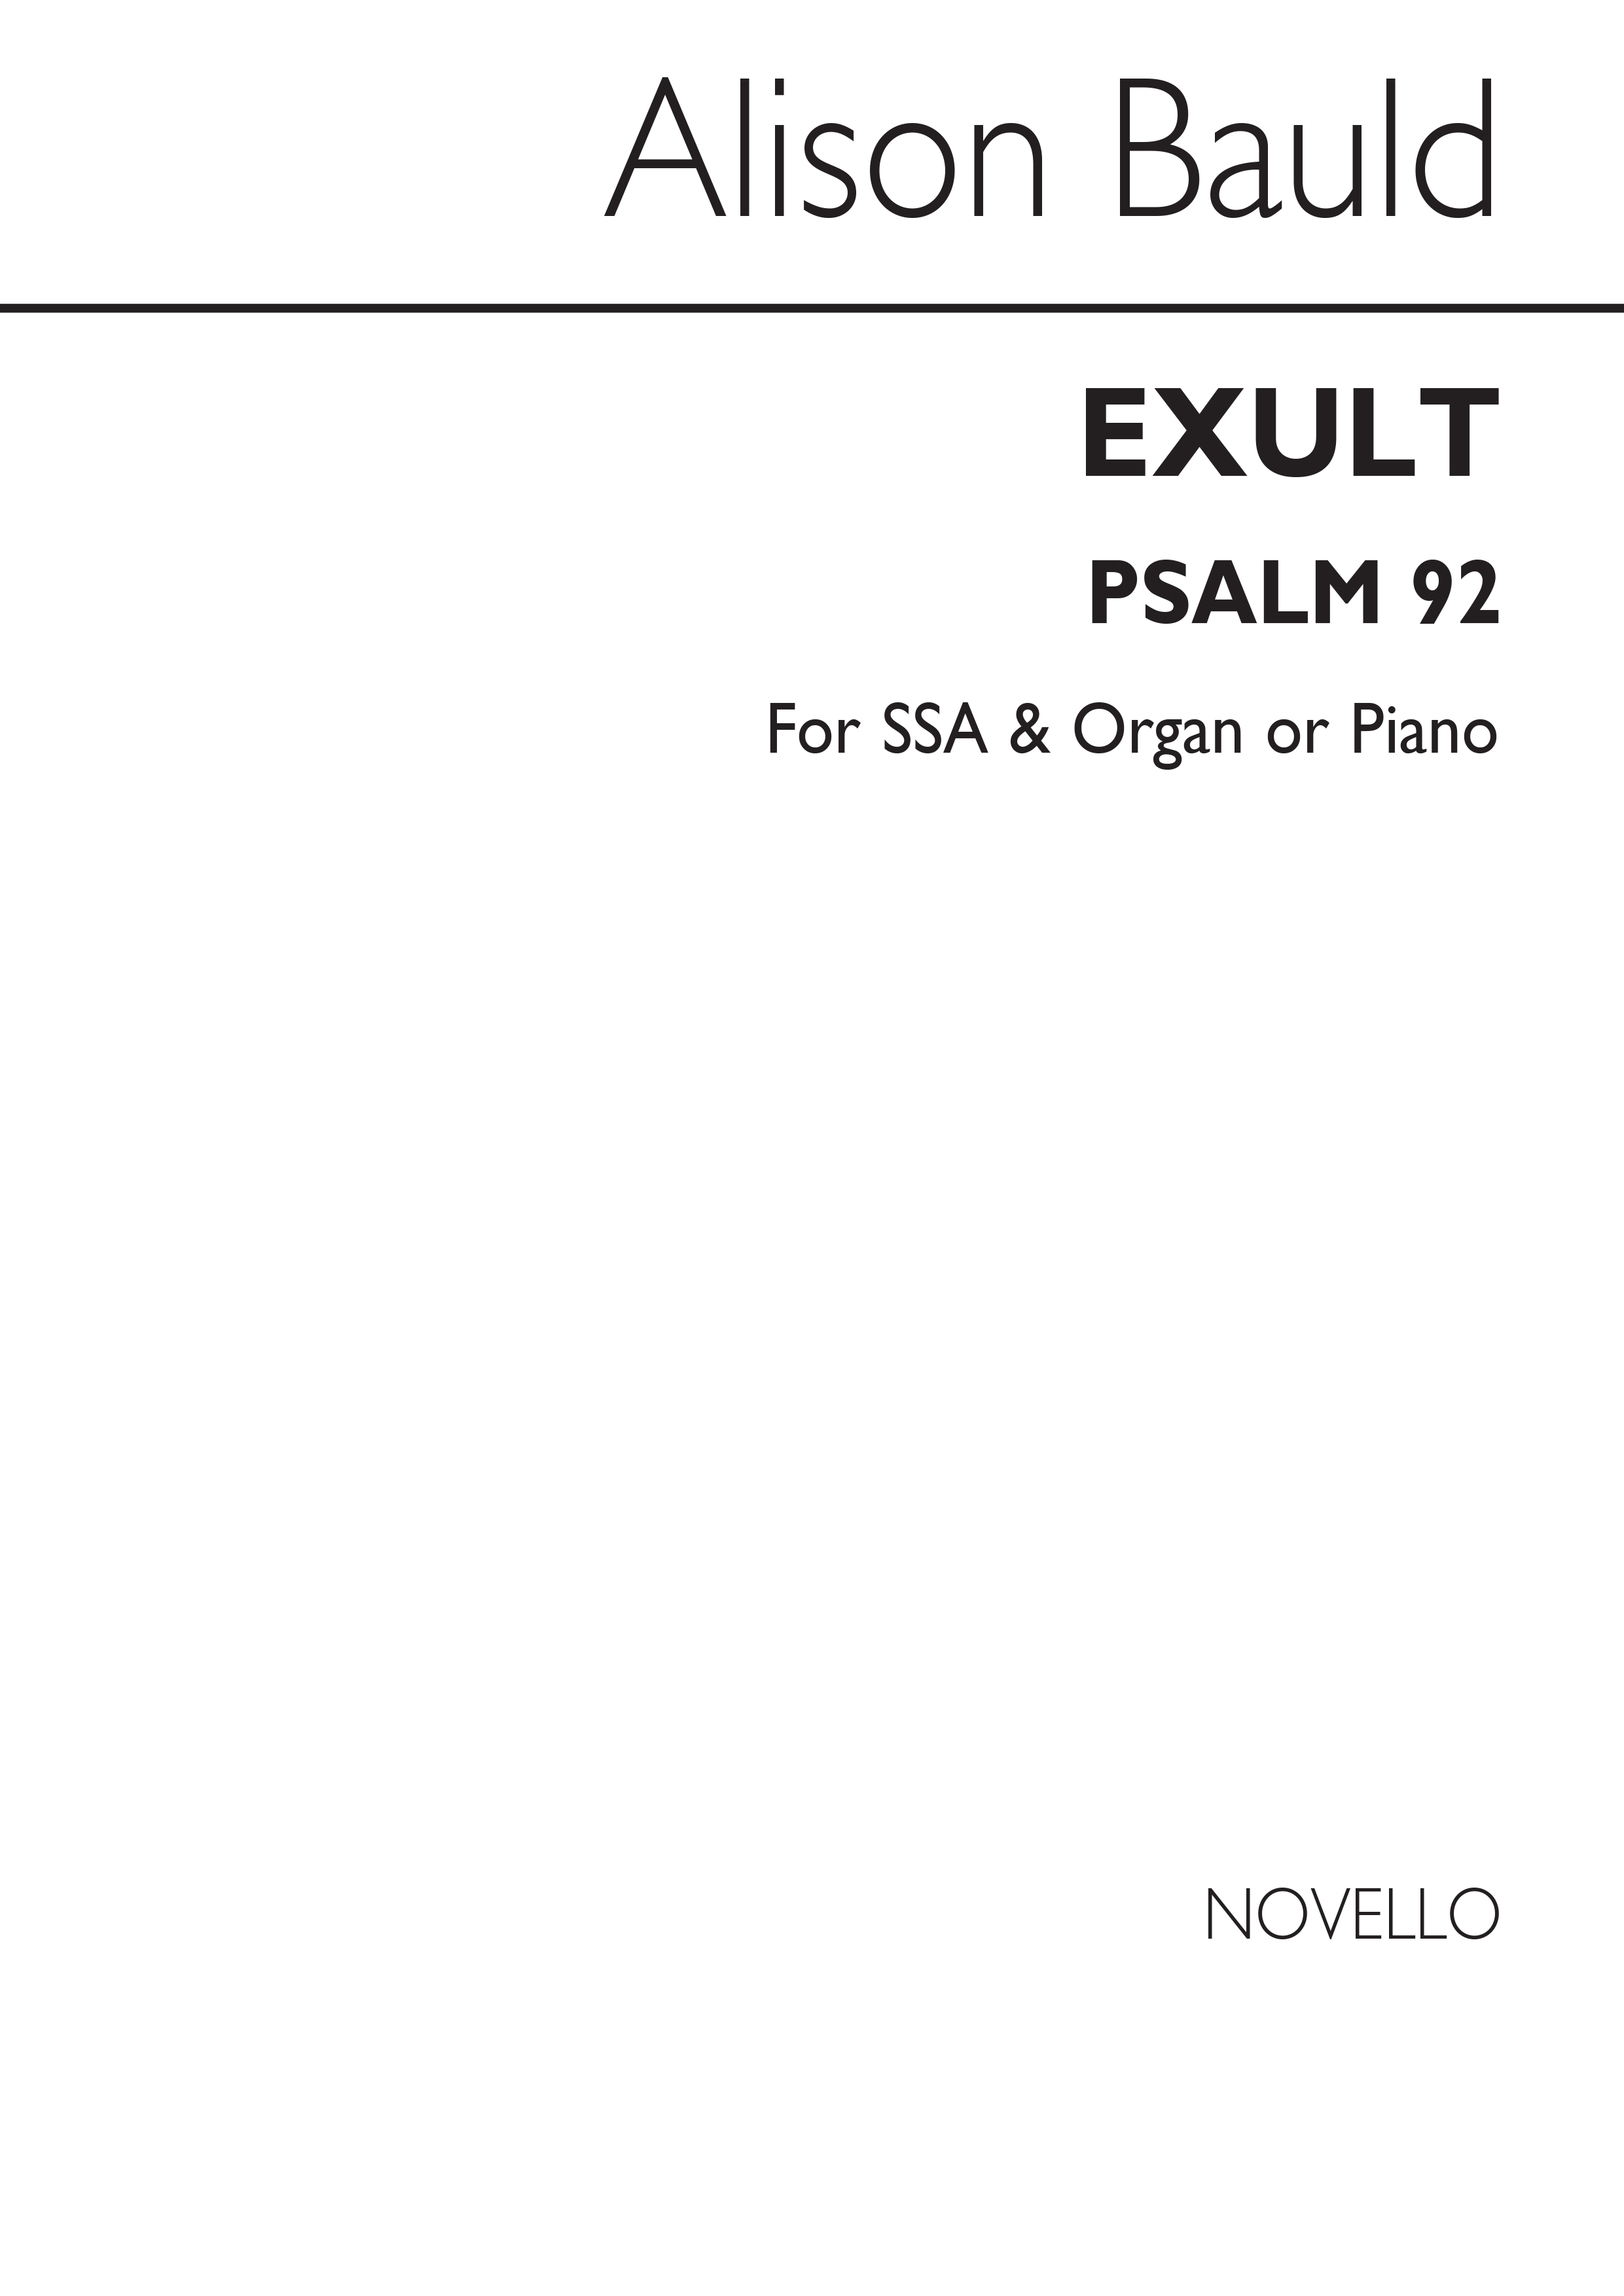 Alison Bauld: Exult (Psalm 92)-SSA/Organ